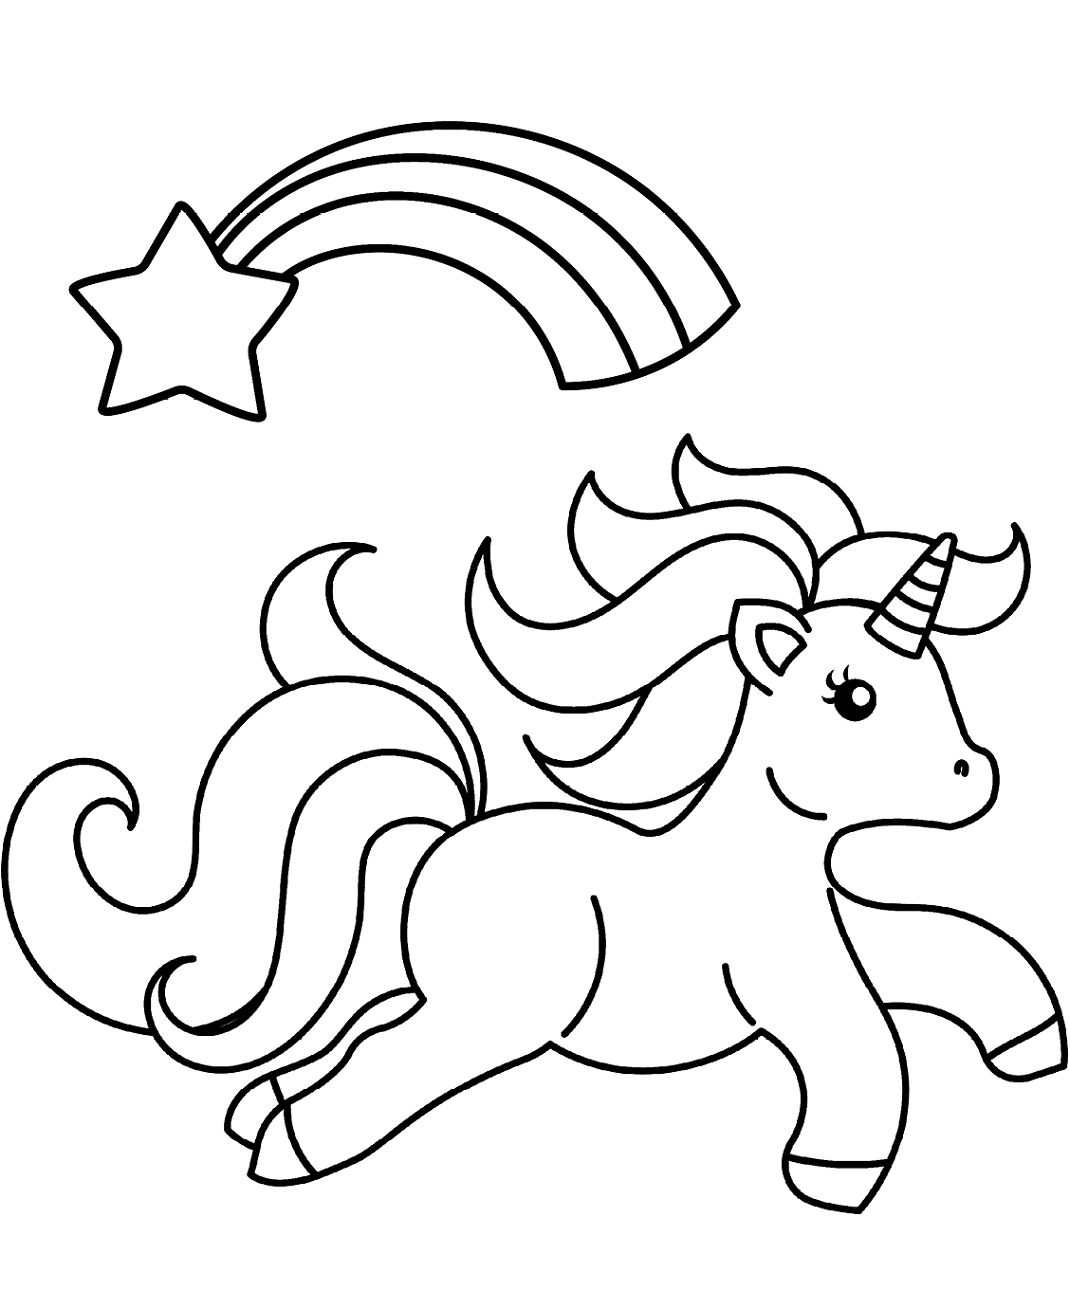 Dibujos de Unicornio con una Estrella Fugaz para colorear